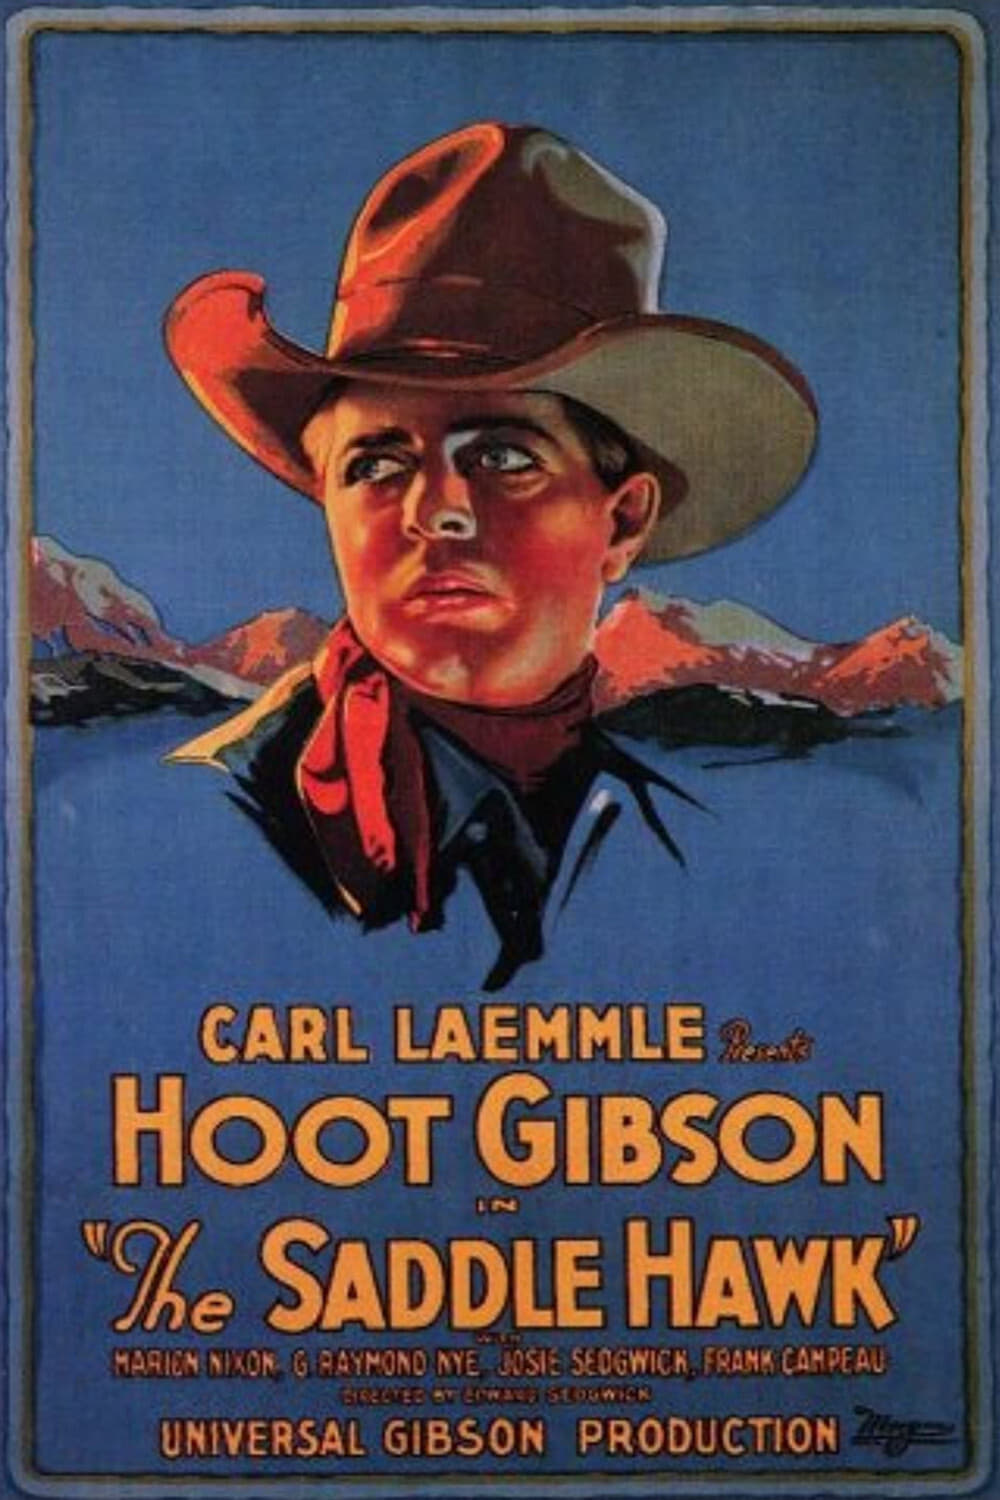 The Saddle Hawk (1925)